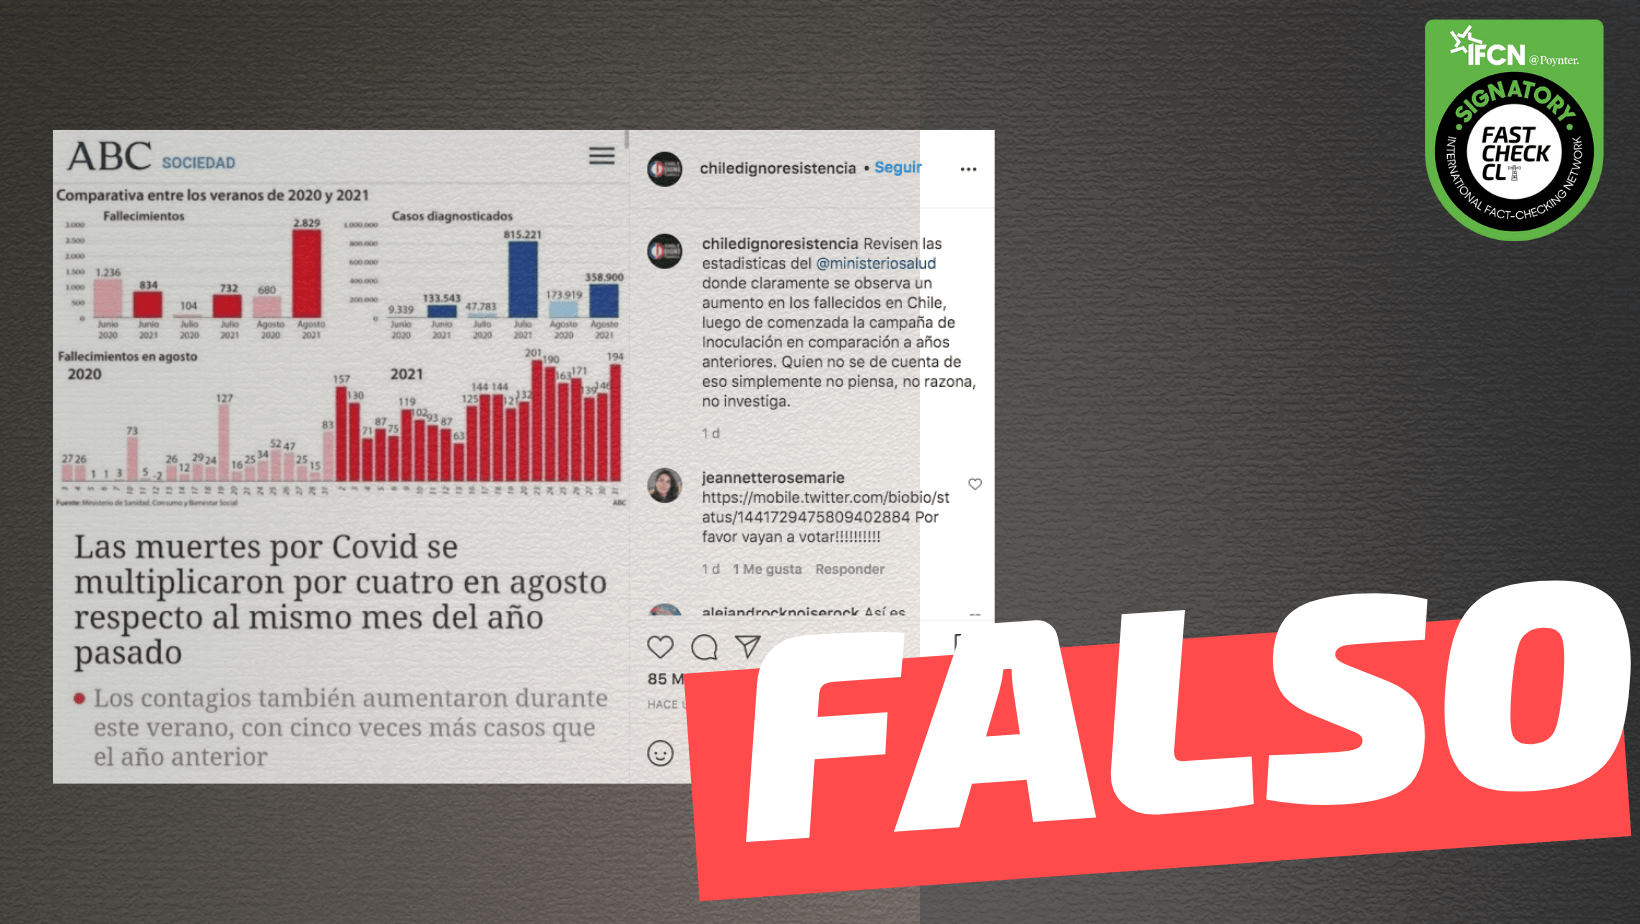 Read more about the article “Las muertes por Covid se multiplicaron por cuatro en agosto respecto al mismo mes del año pasado”: #Falso